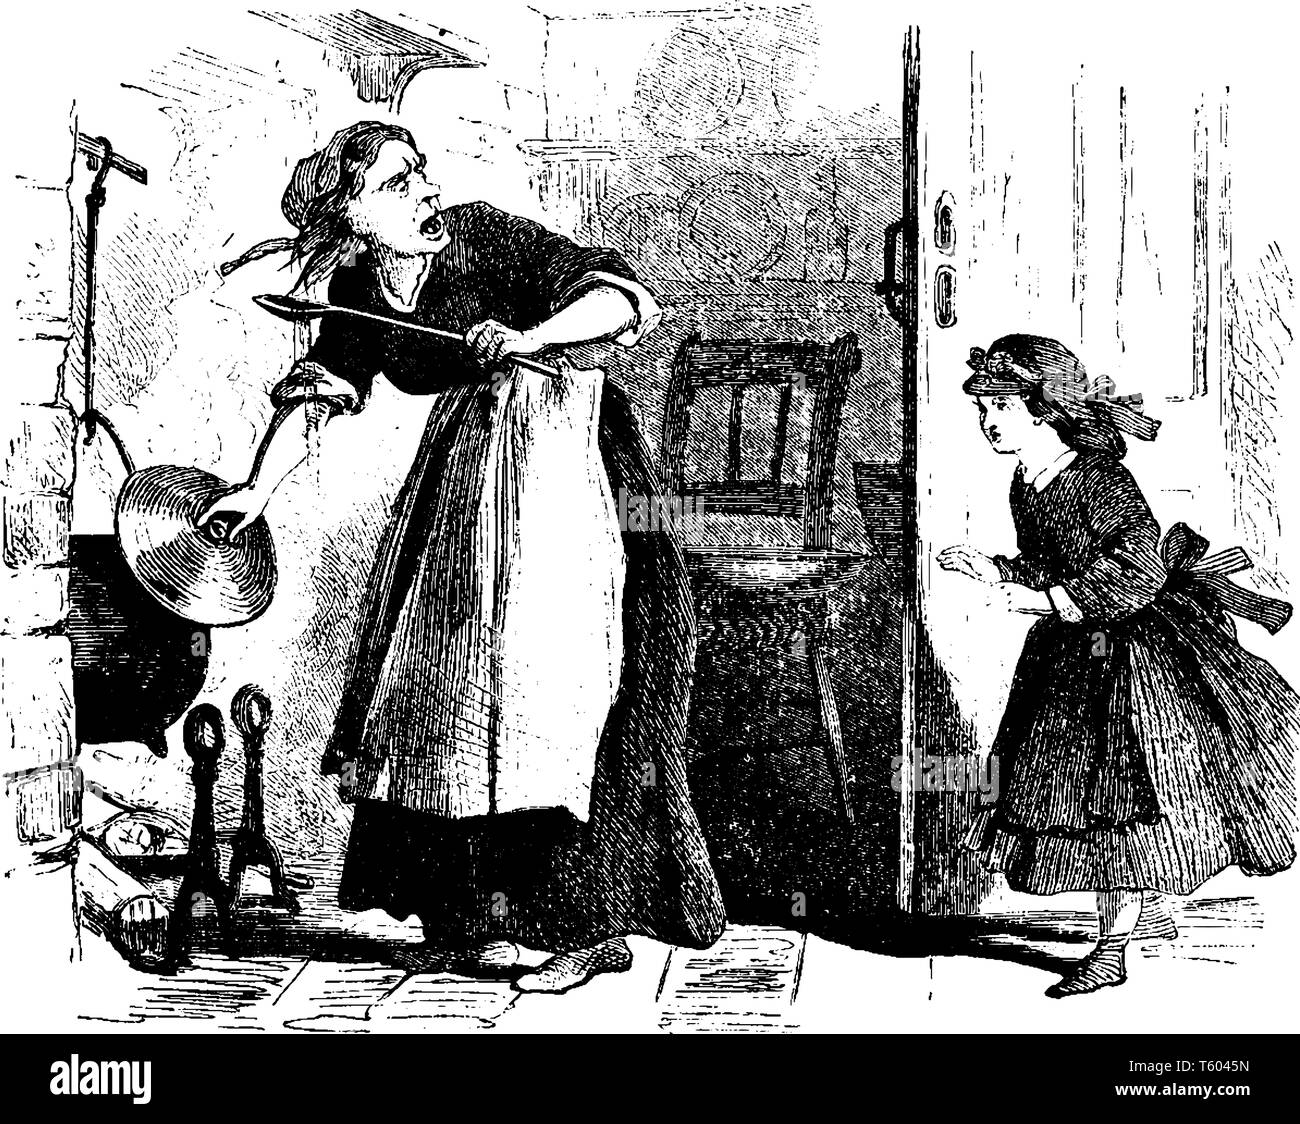 Eine Frau kochen, während Kind schreien, vintage Strichzeichnung oder Gravur Abbildung Stock Vektor